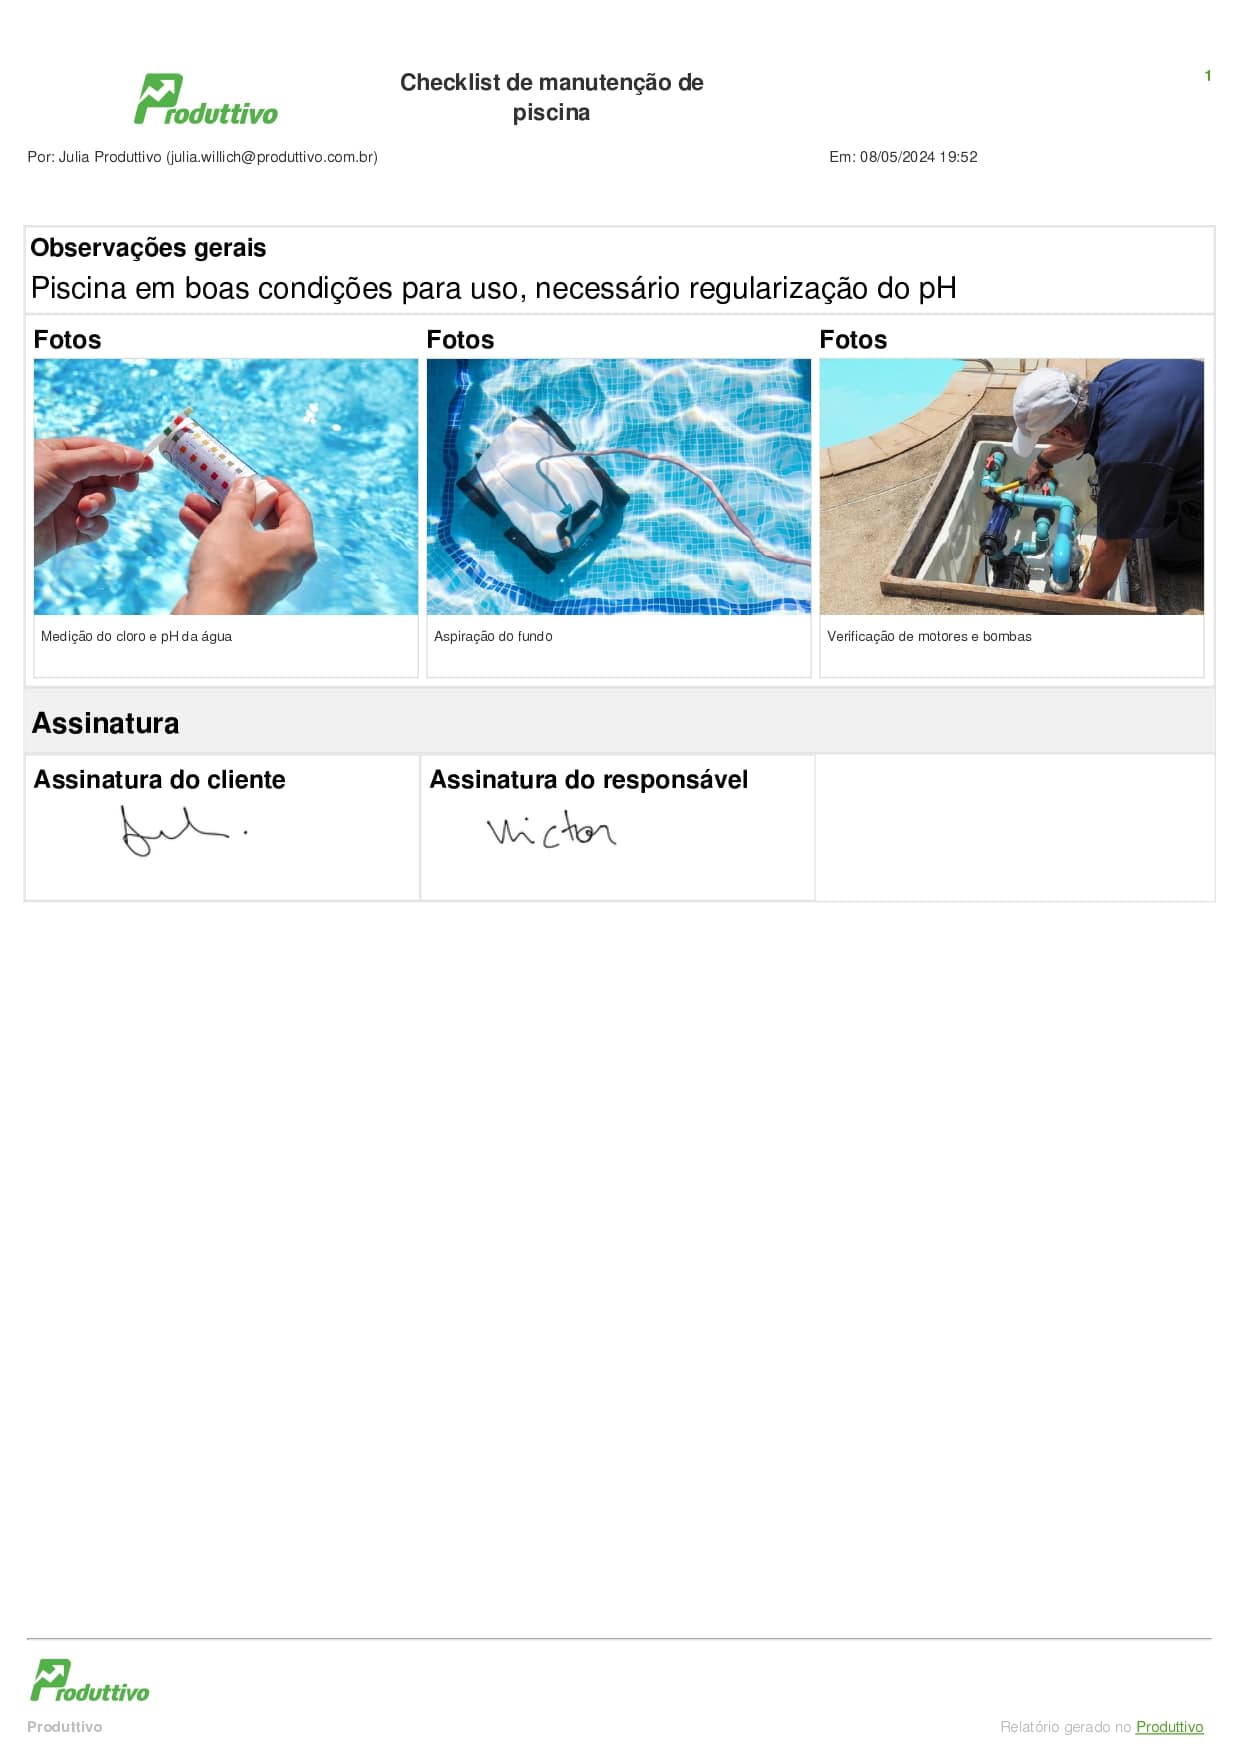 Modelo de checklist digital para manutenção de piscina com campos de imagens e assinatura